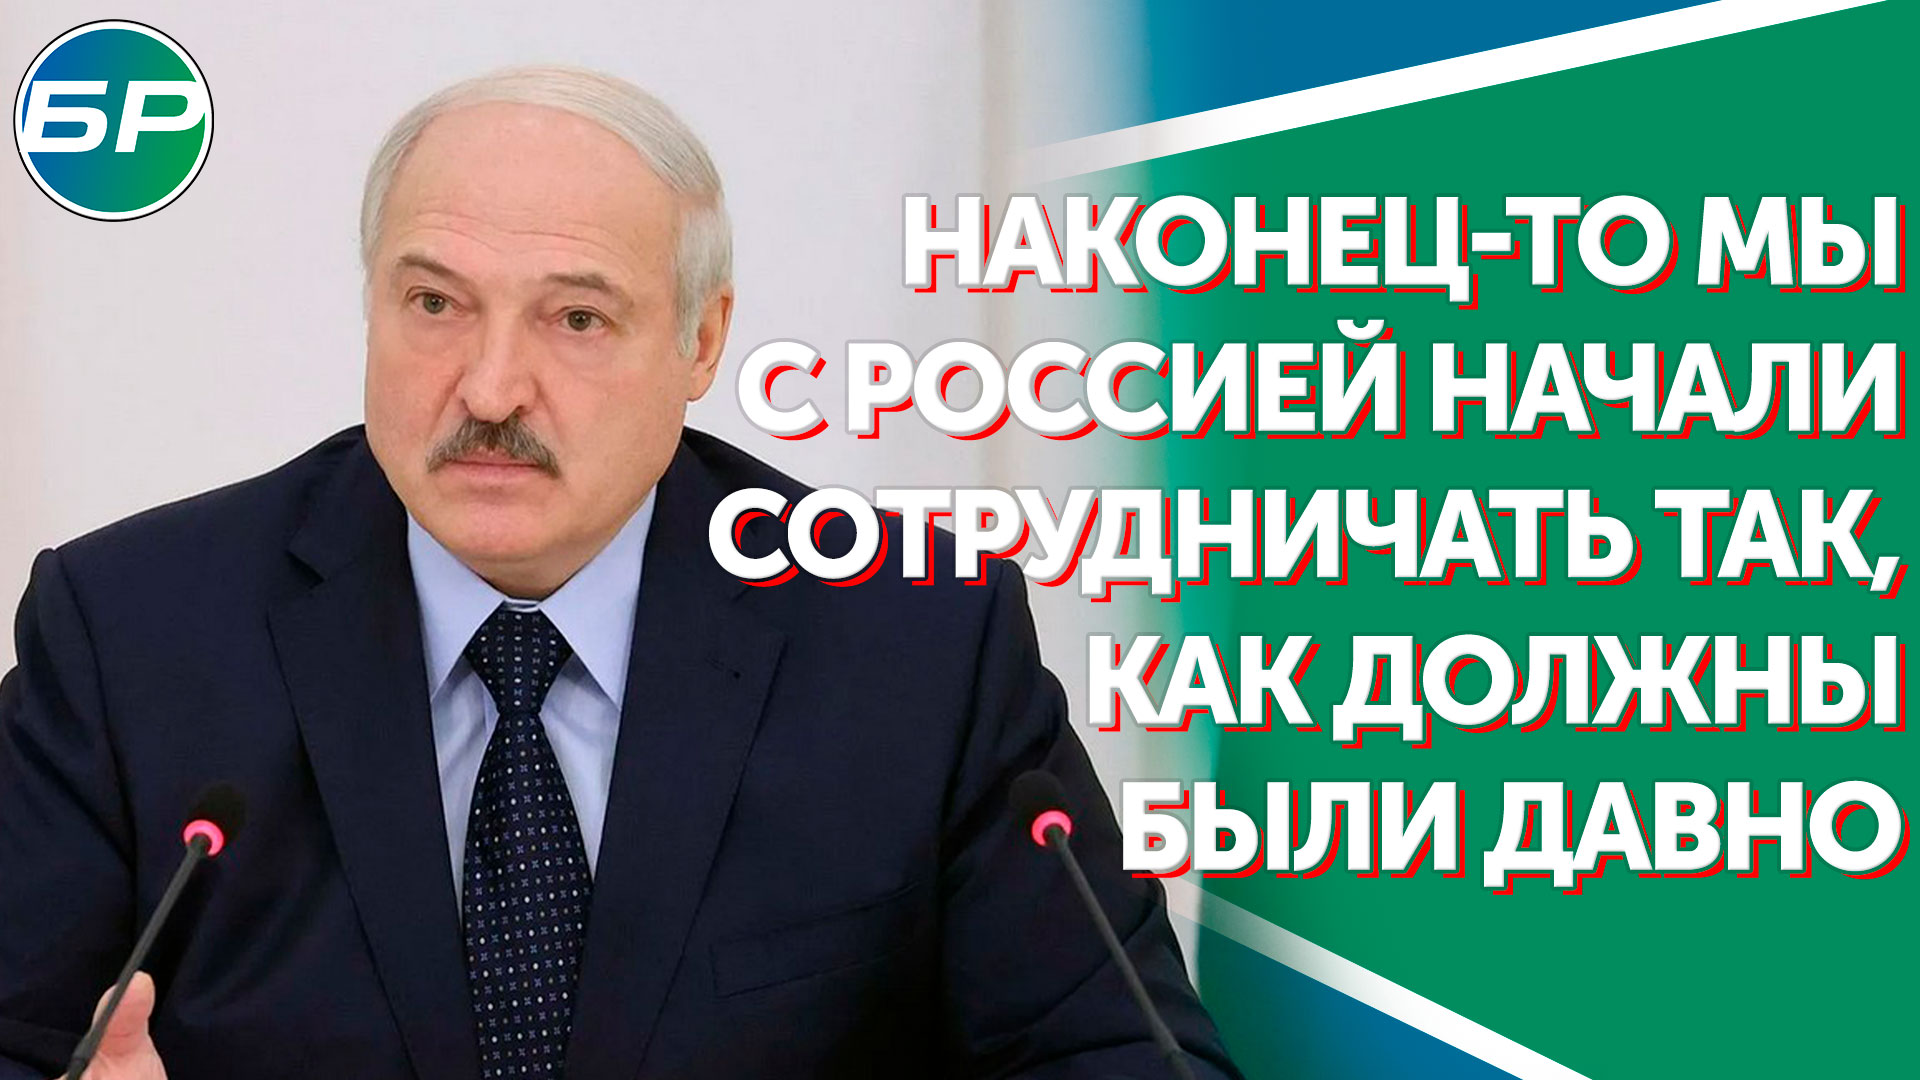 Лукашенко: наконец-то мы с Россией начали сотрудничать так, как должны были давно